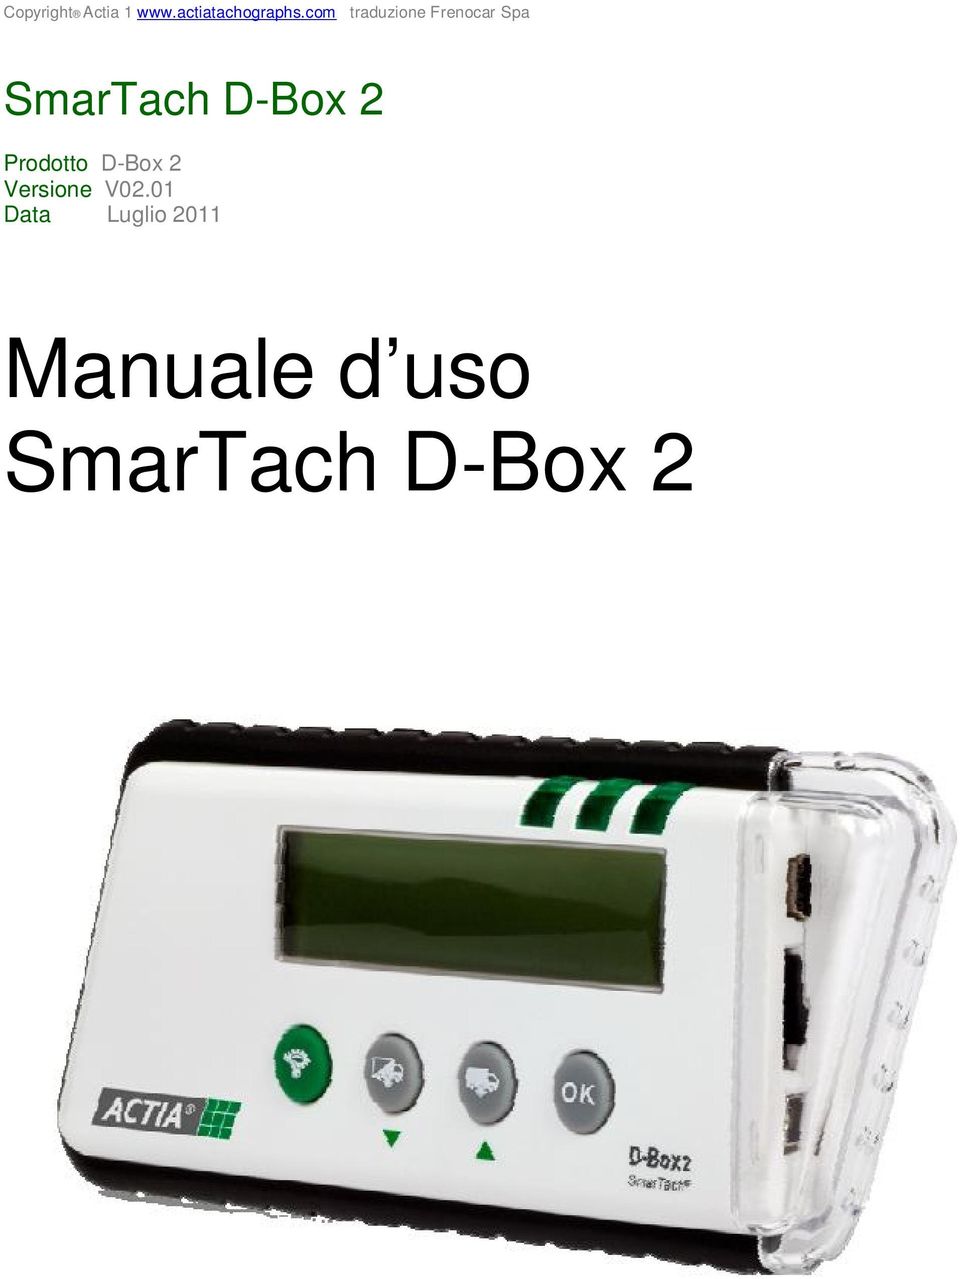 D-Box 2 Prodotto D-Box 2 Versione V02.